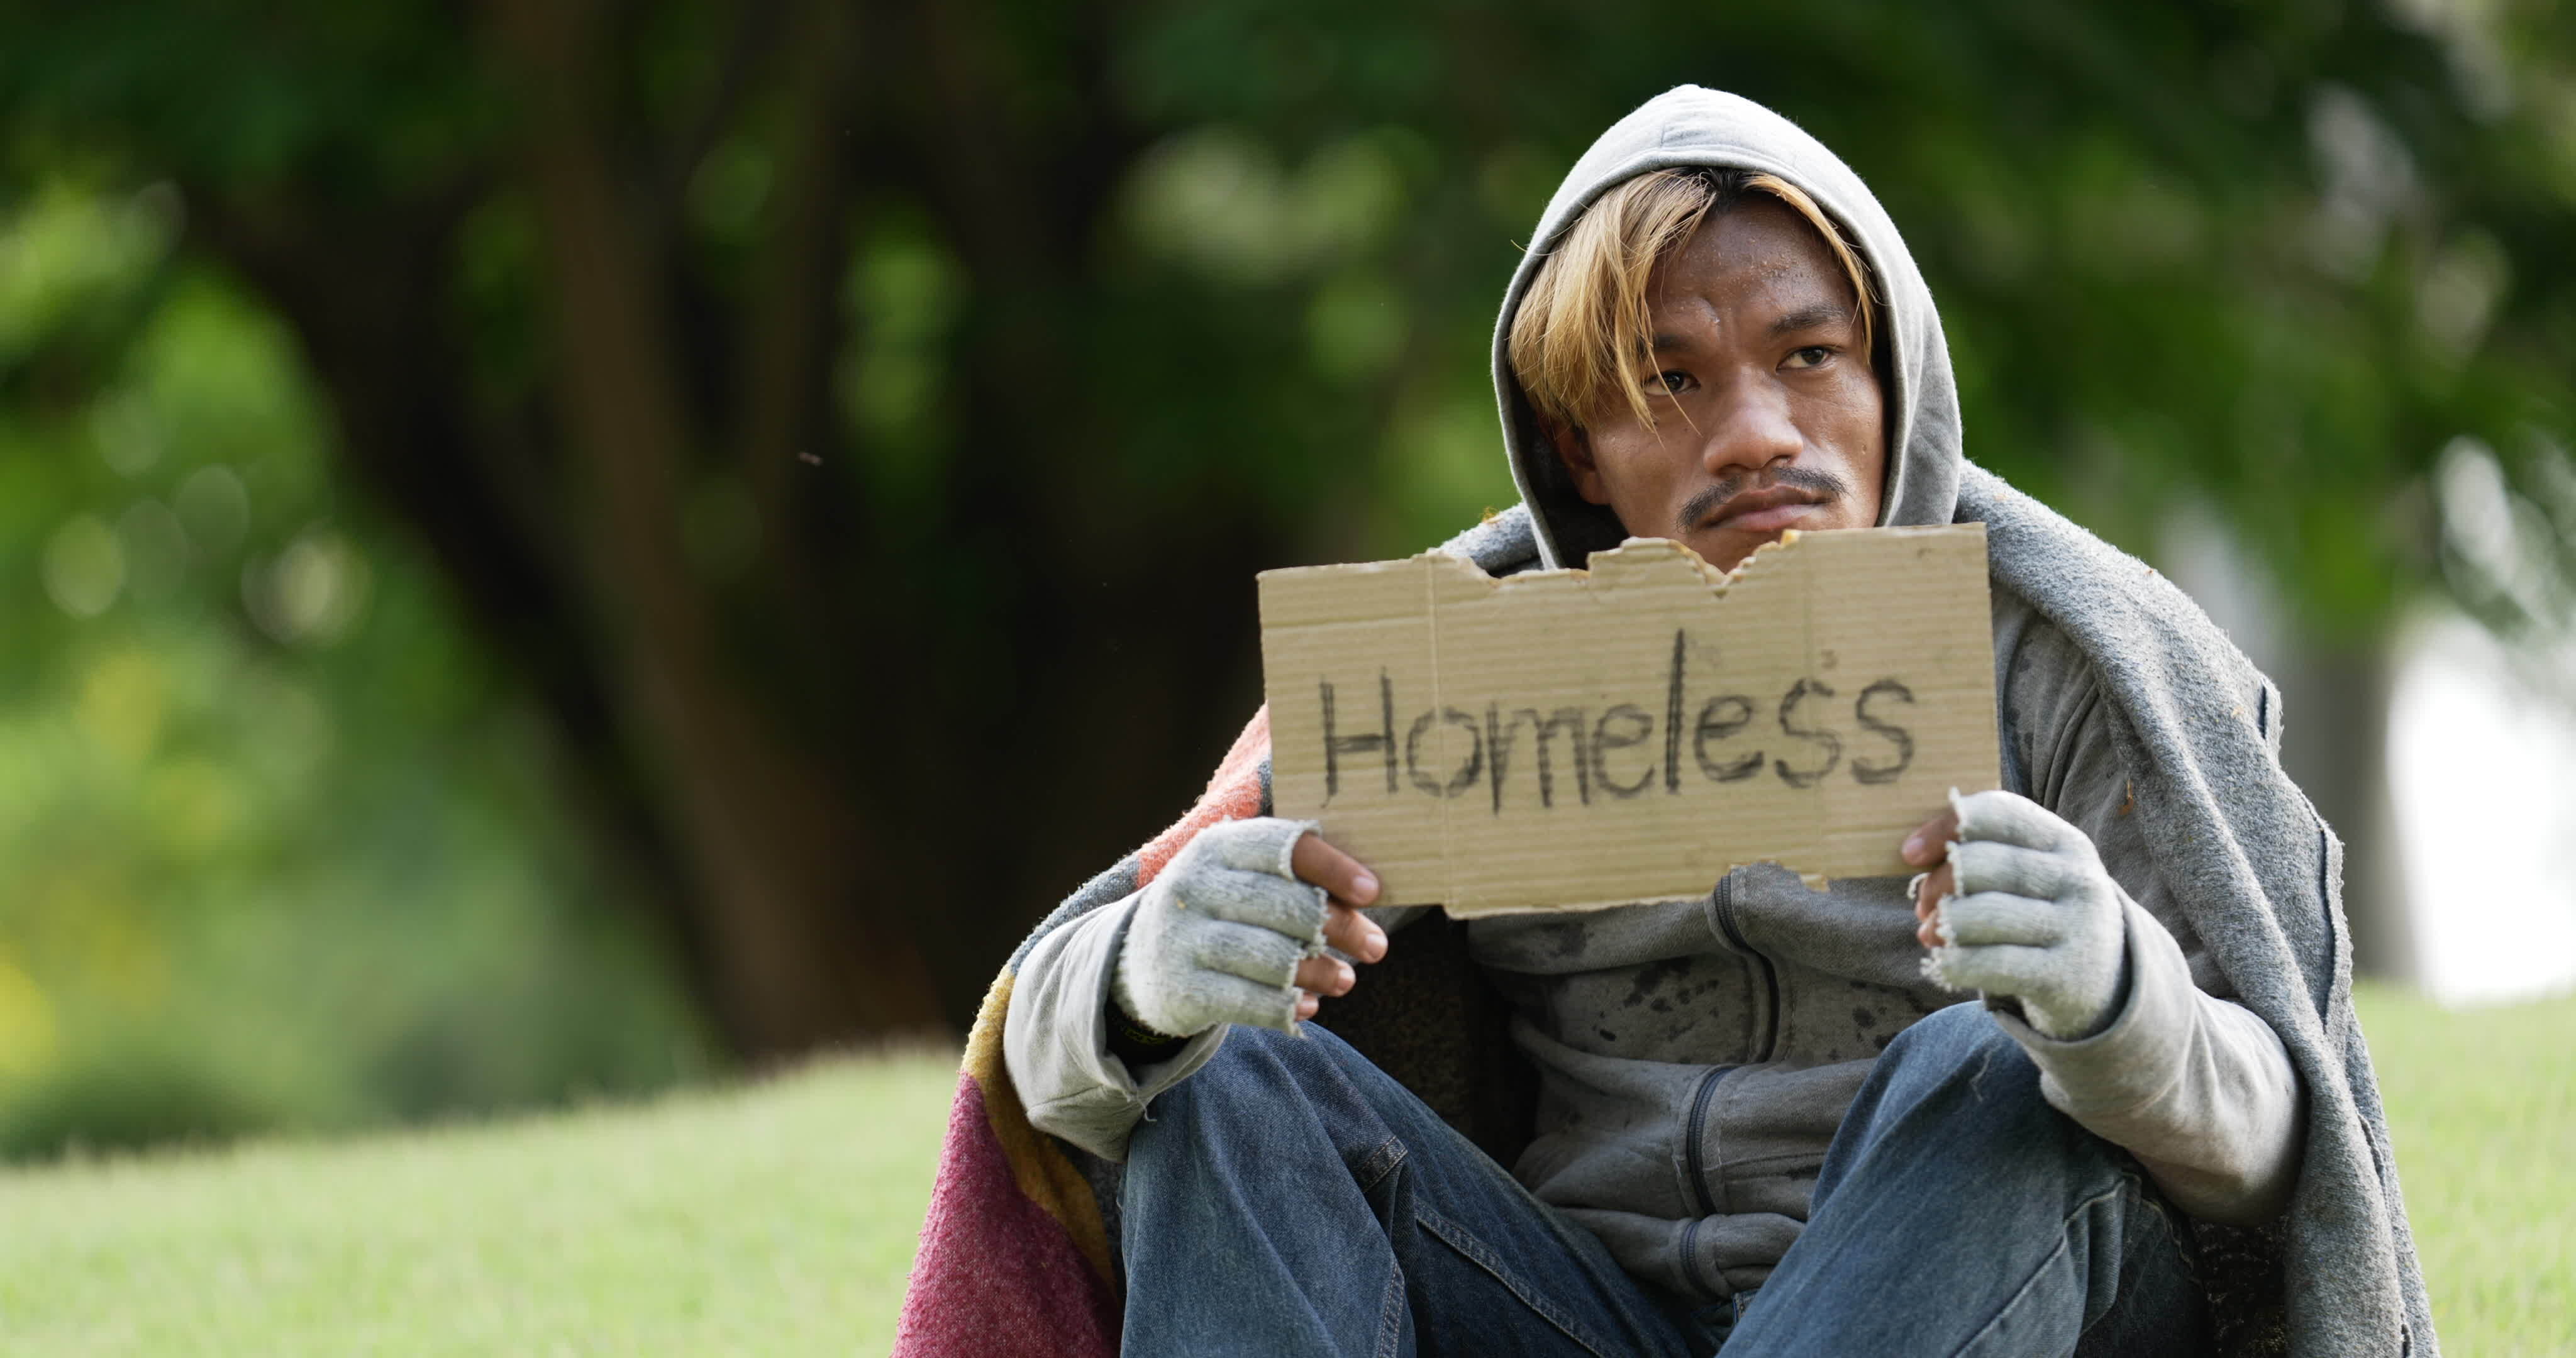 Rich man buys homeless man. Helping poor man.